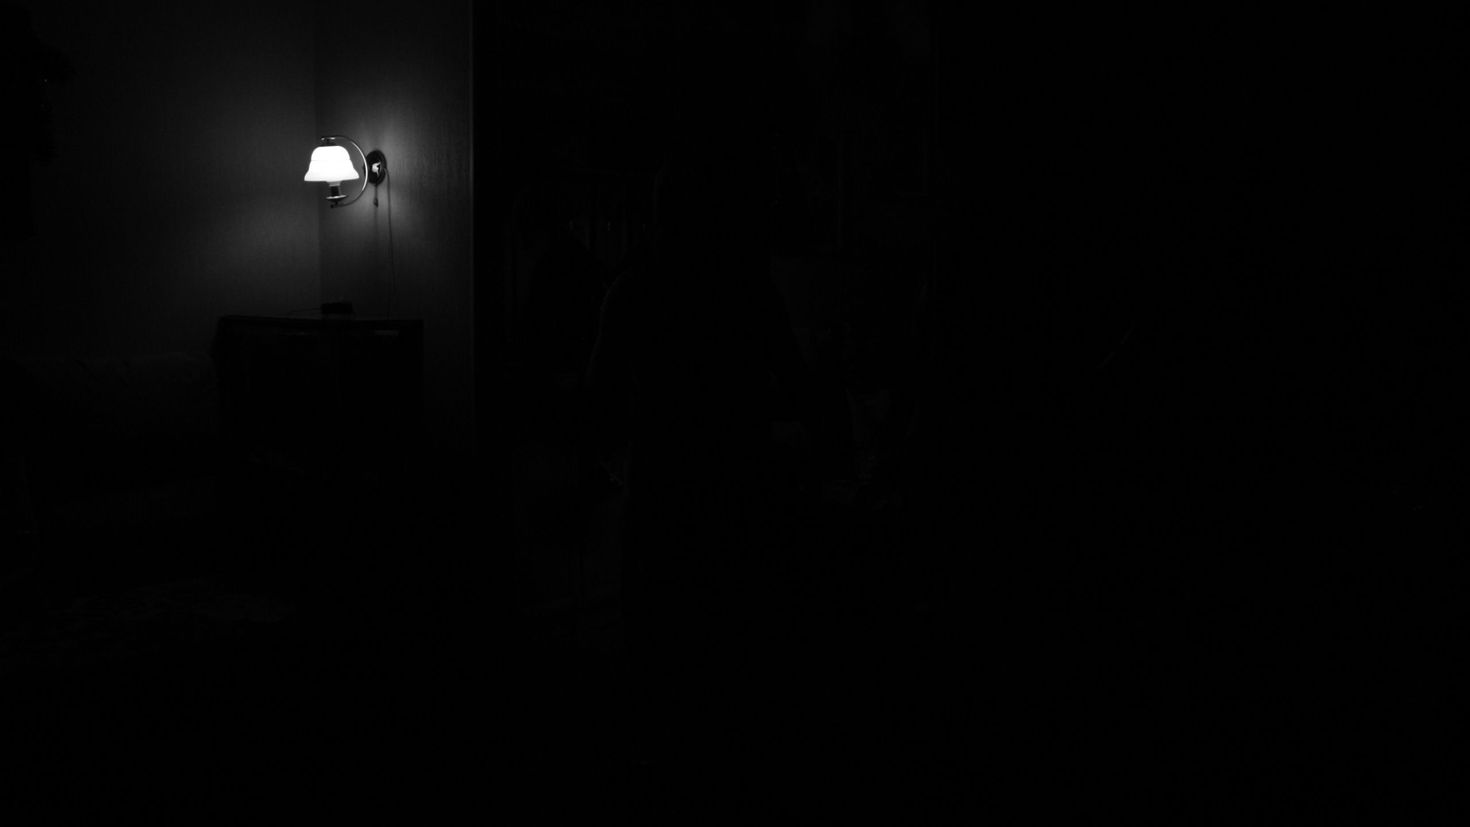 Комната в темноте